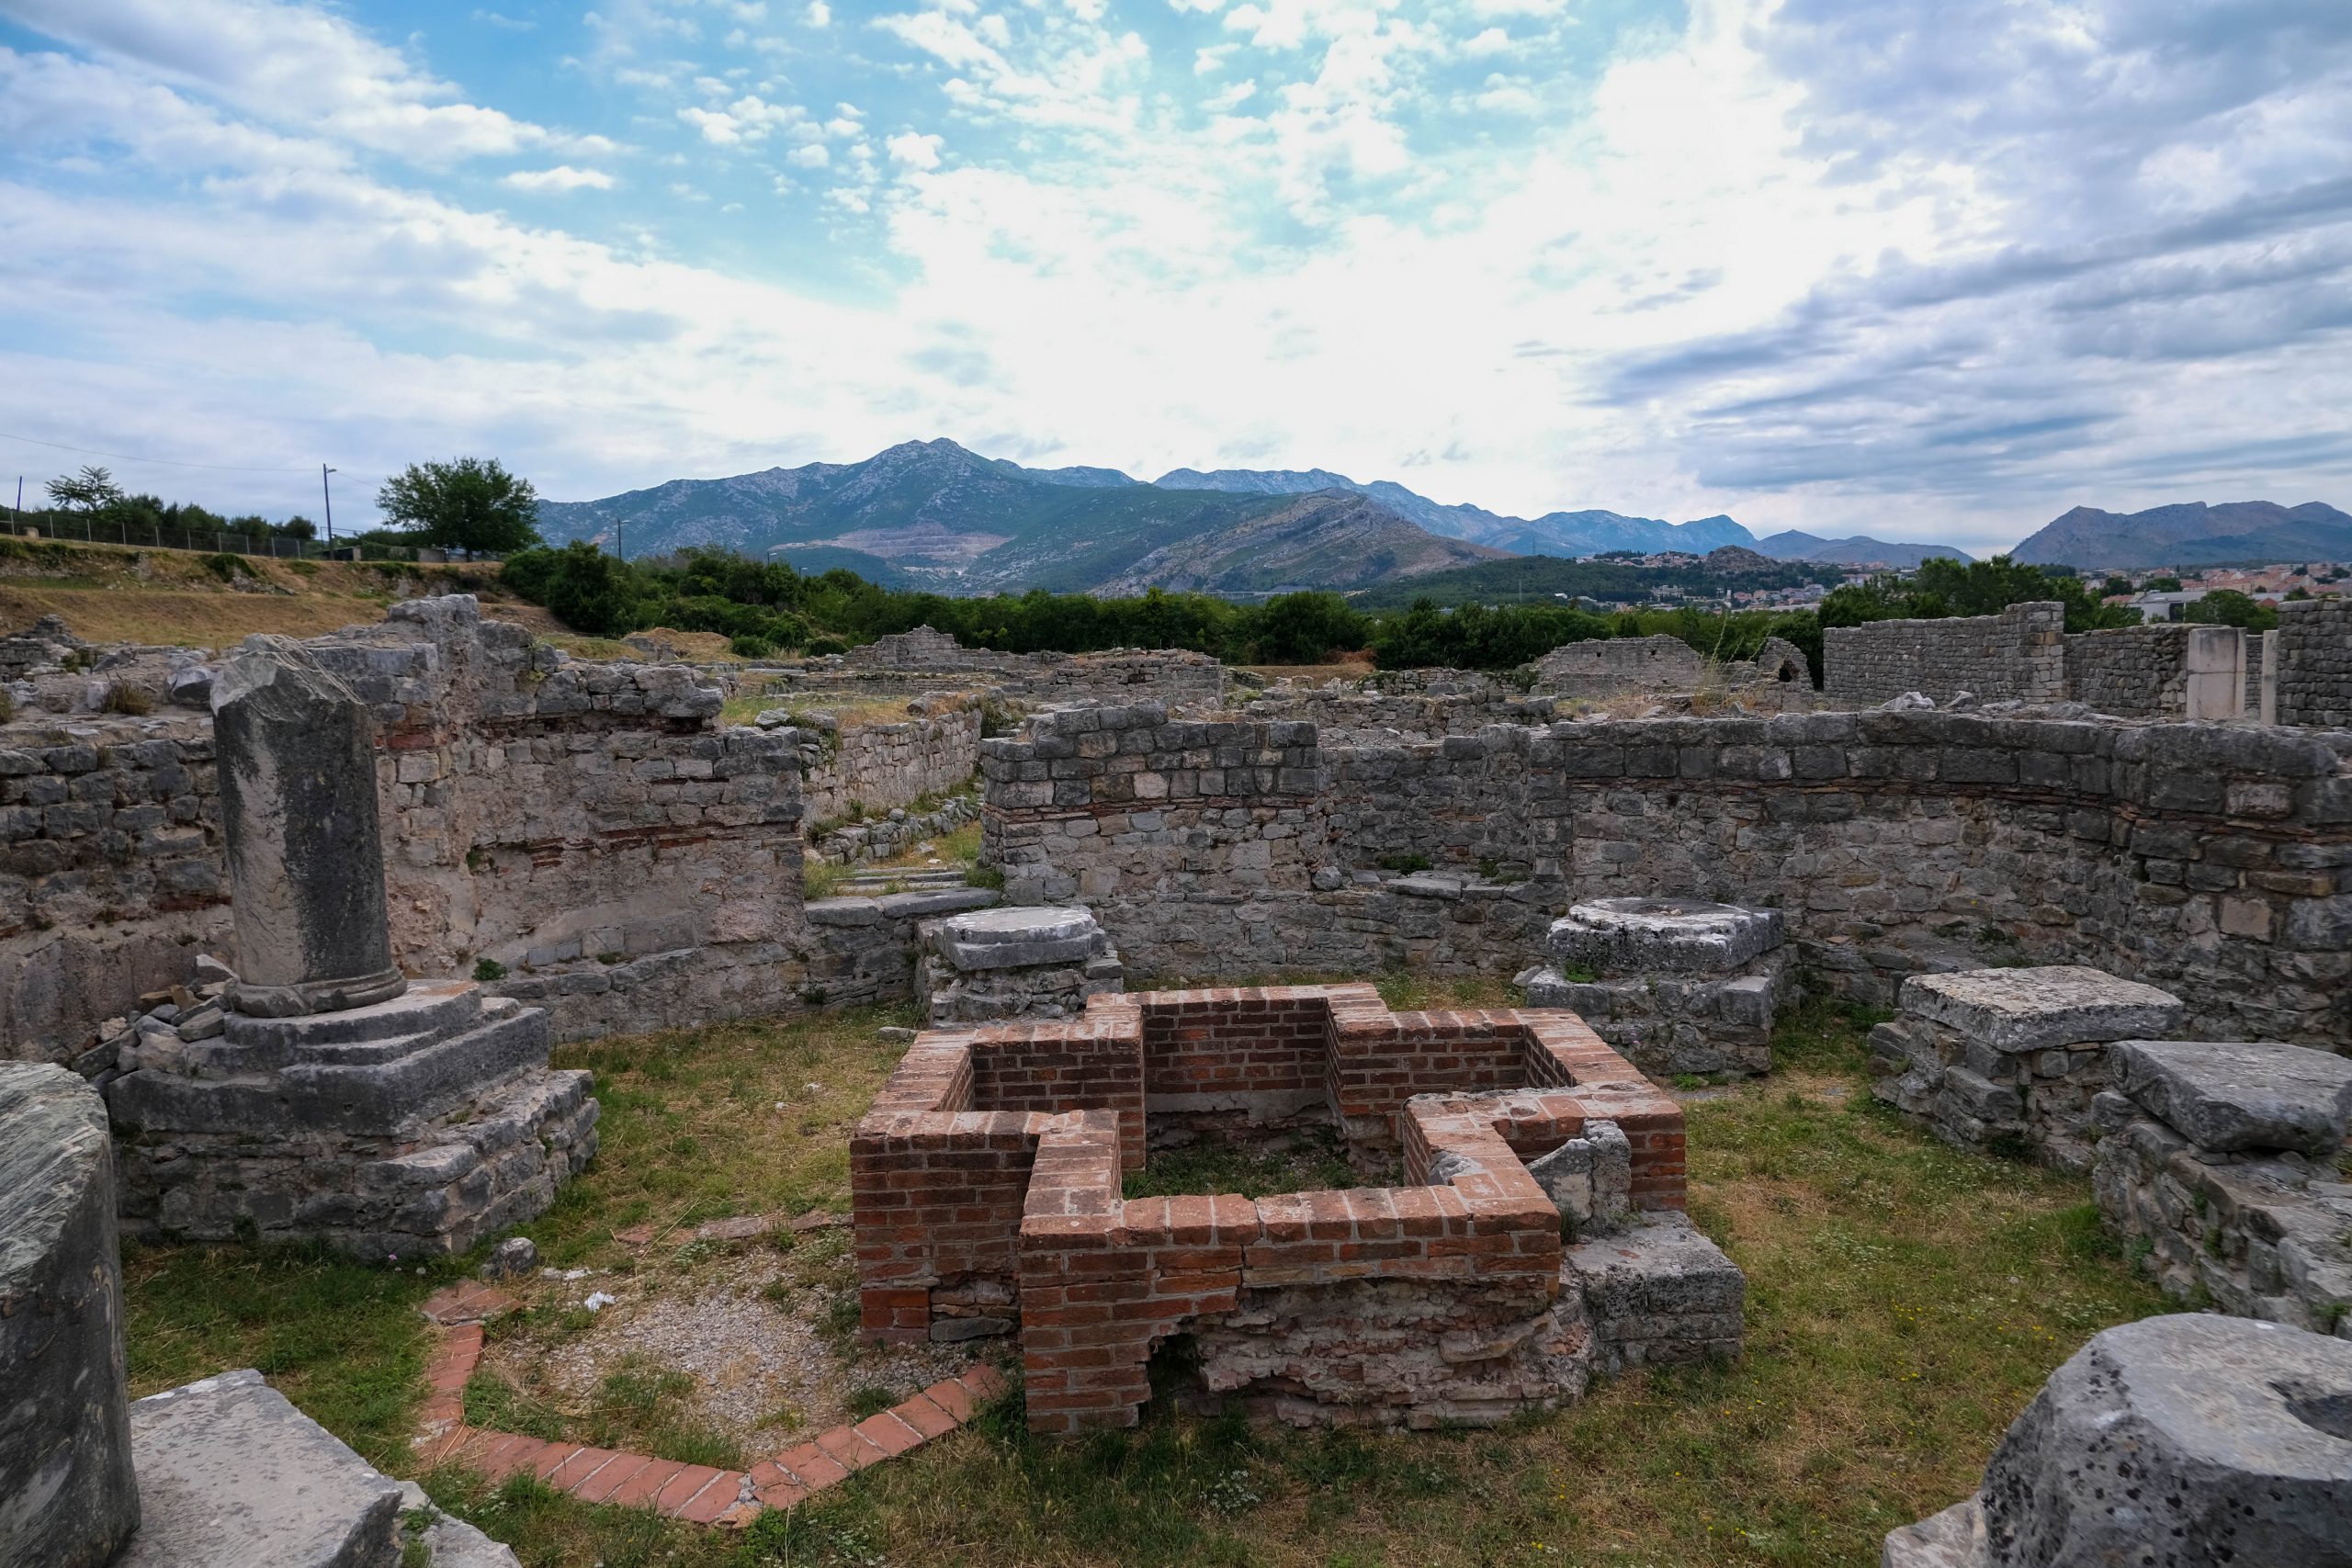 Visitare l’area archeologica di Salona in Croazia